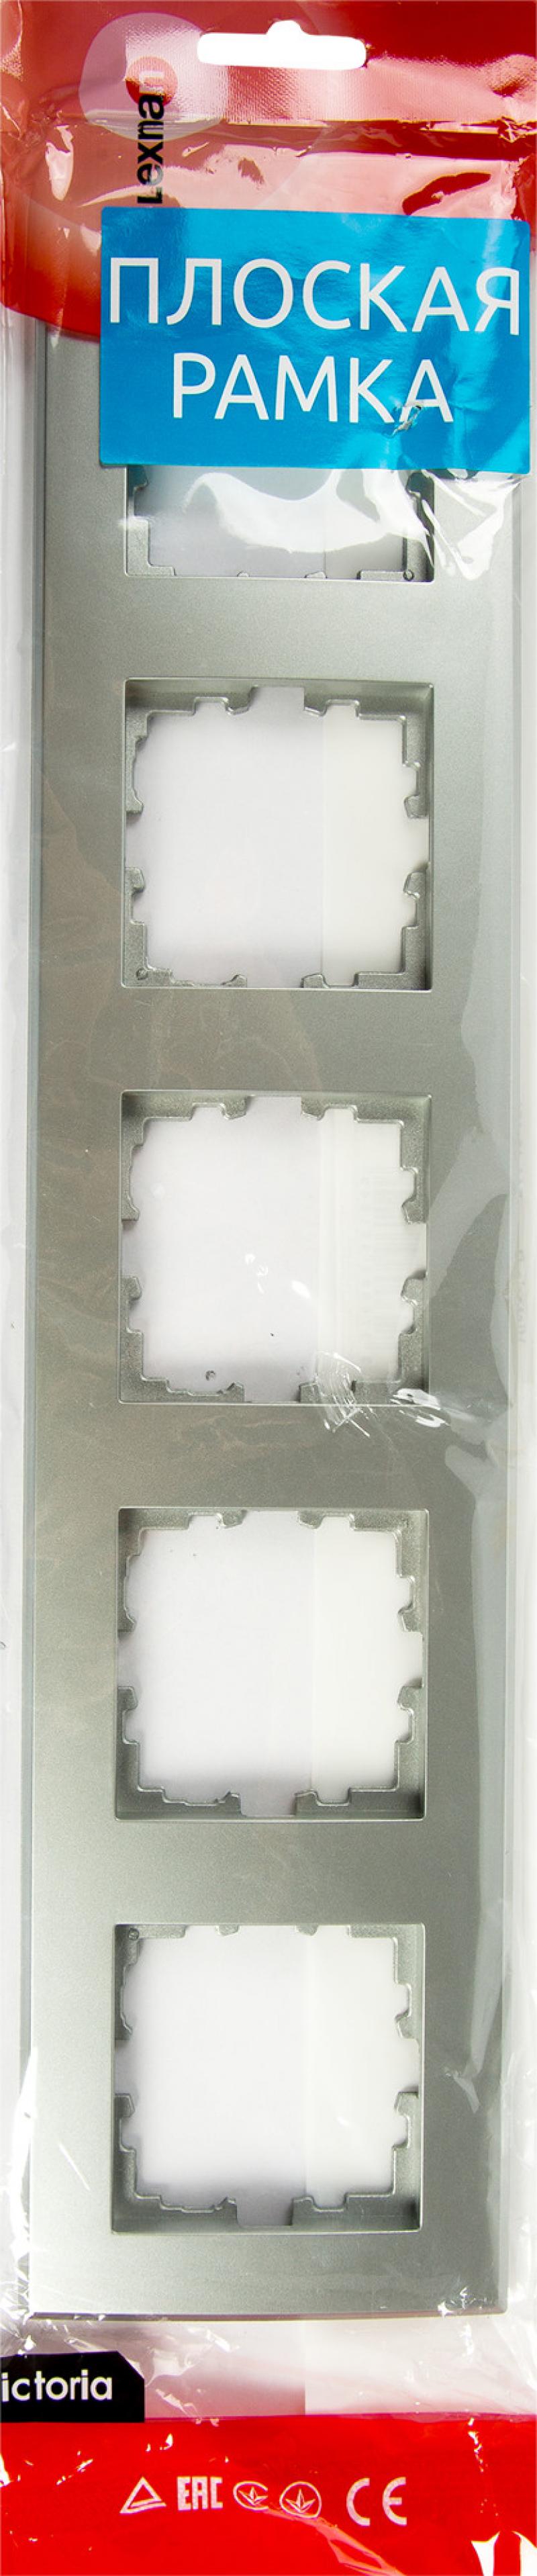 Рамка для розеток и выключателей Lexman Виктория плоская 5 постов цвет серебристый